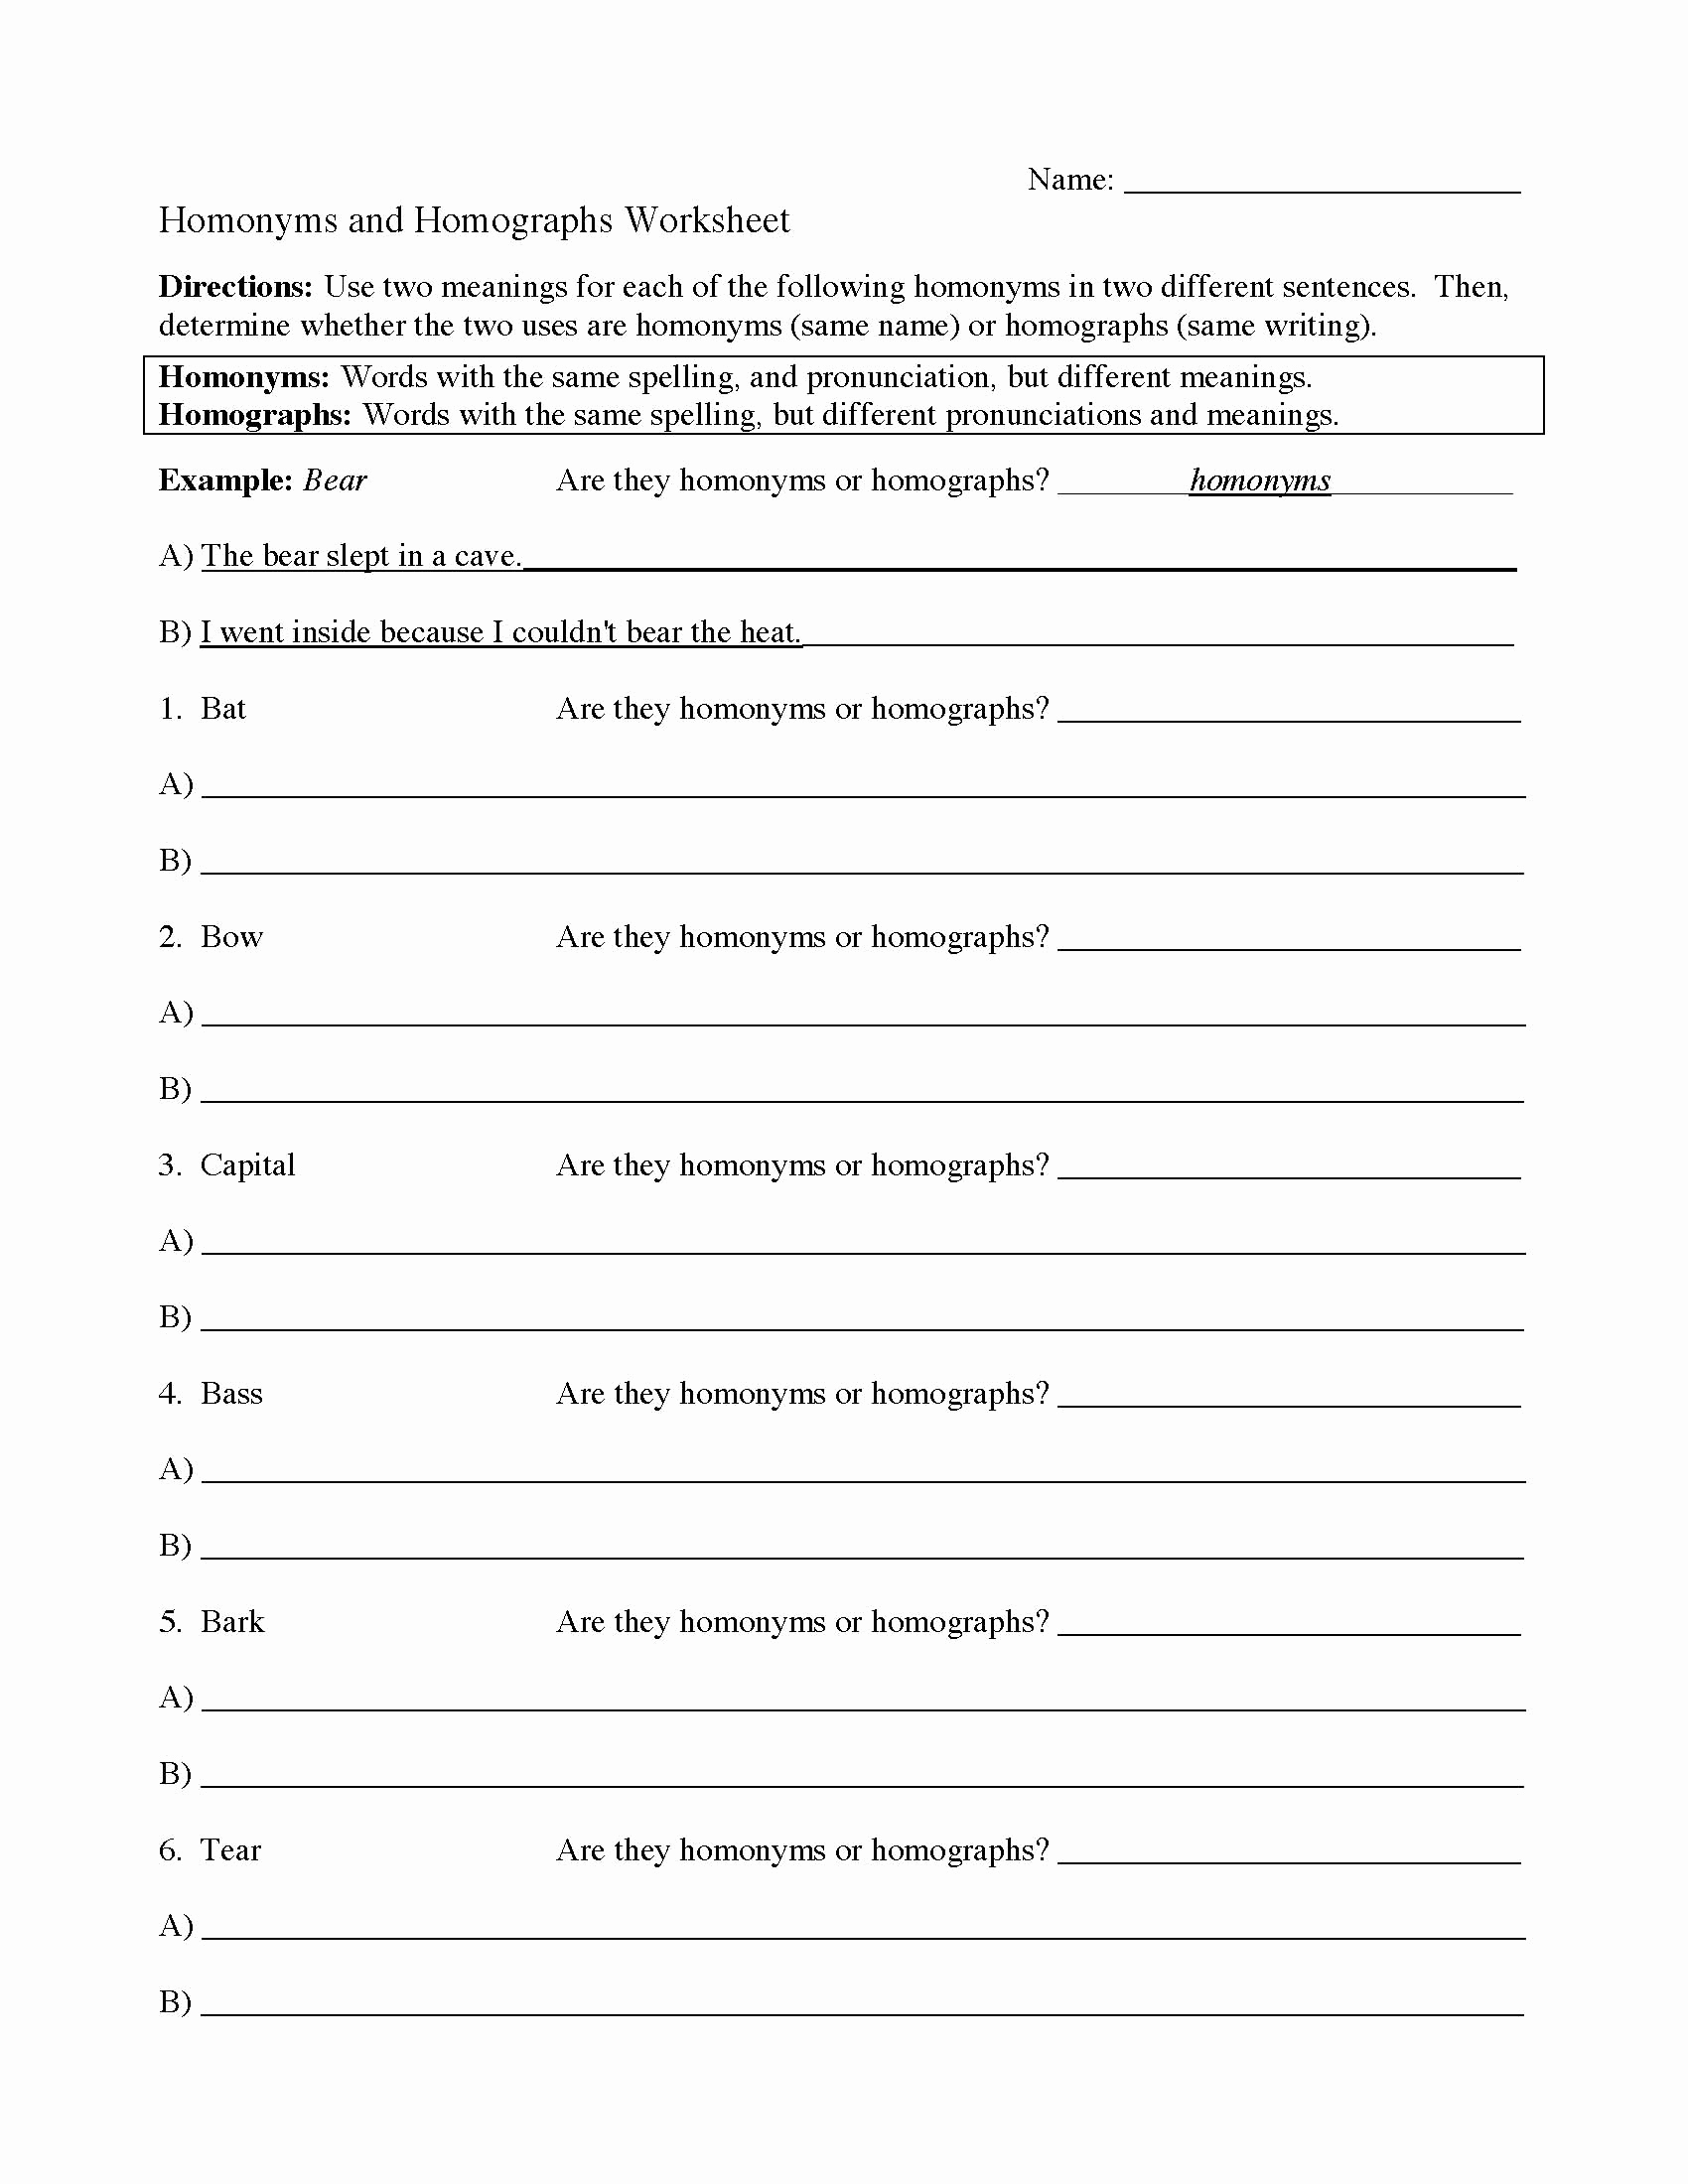 Homographs Practice Worksheets Elegant Homonyms and Homographs Worksheet 1